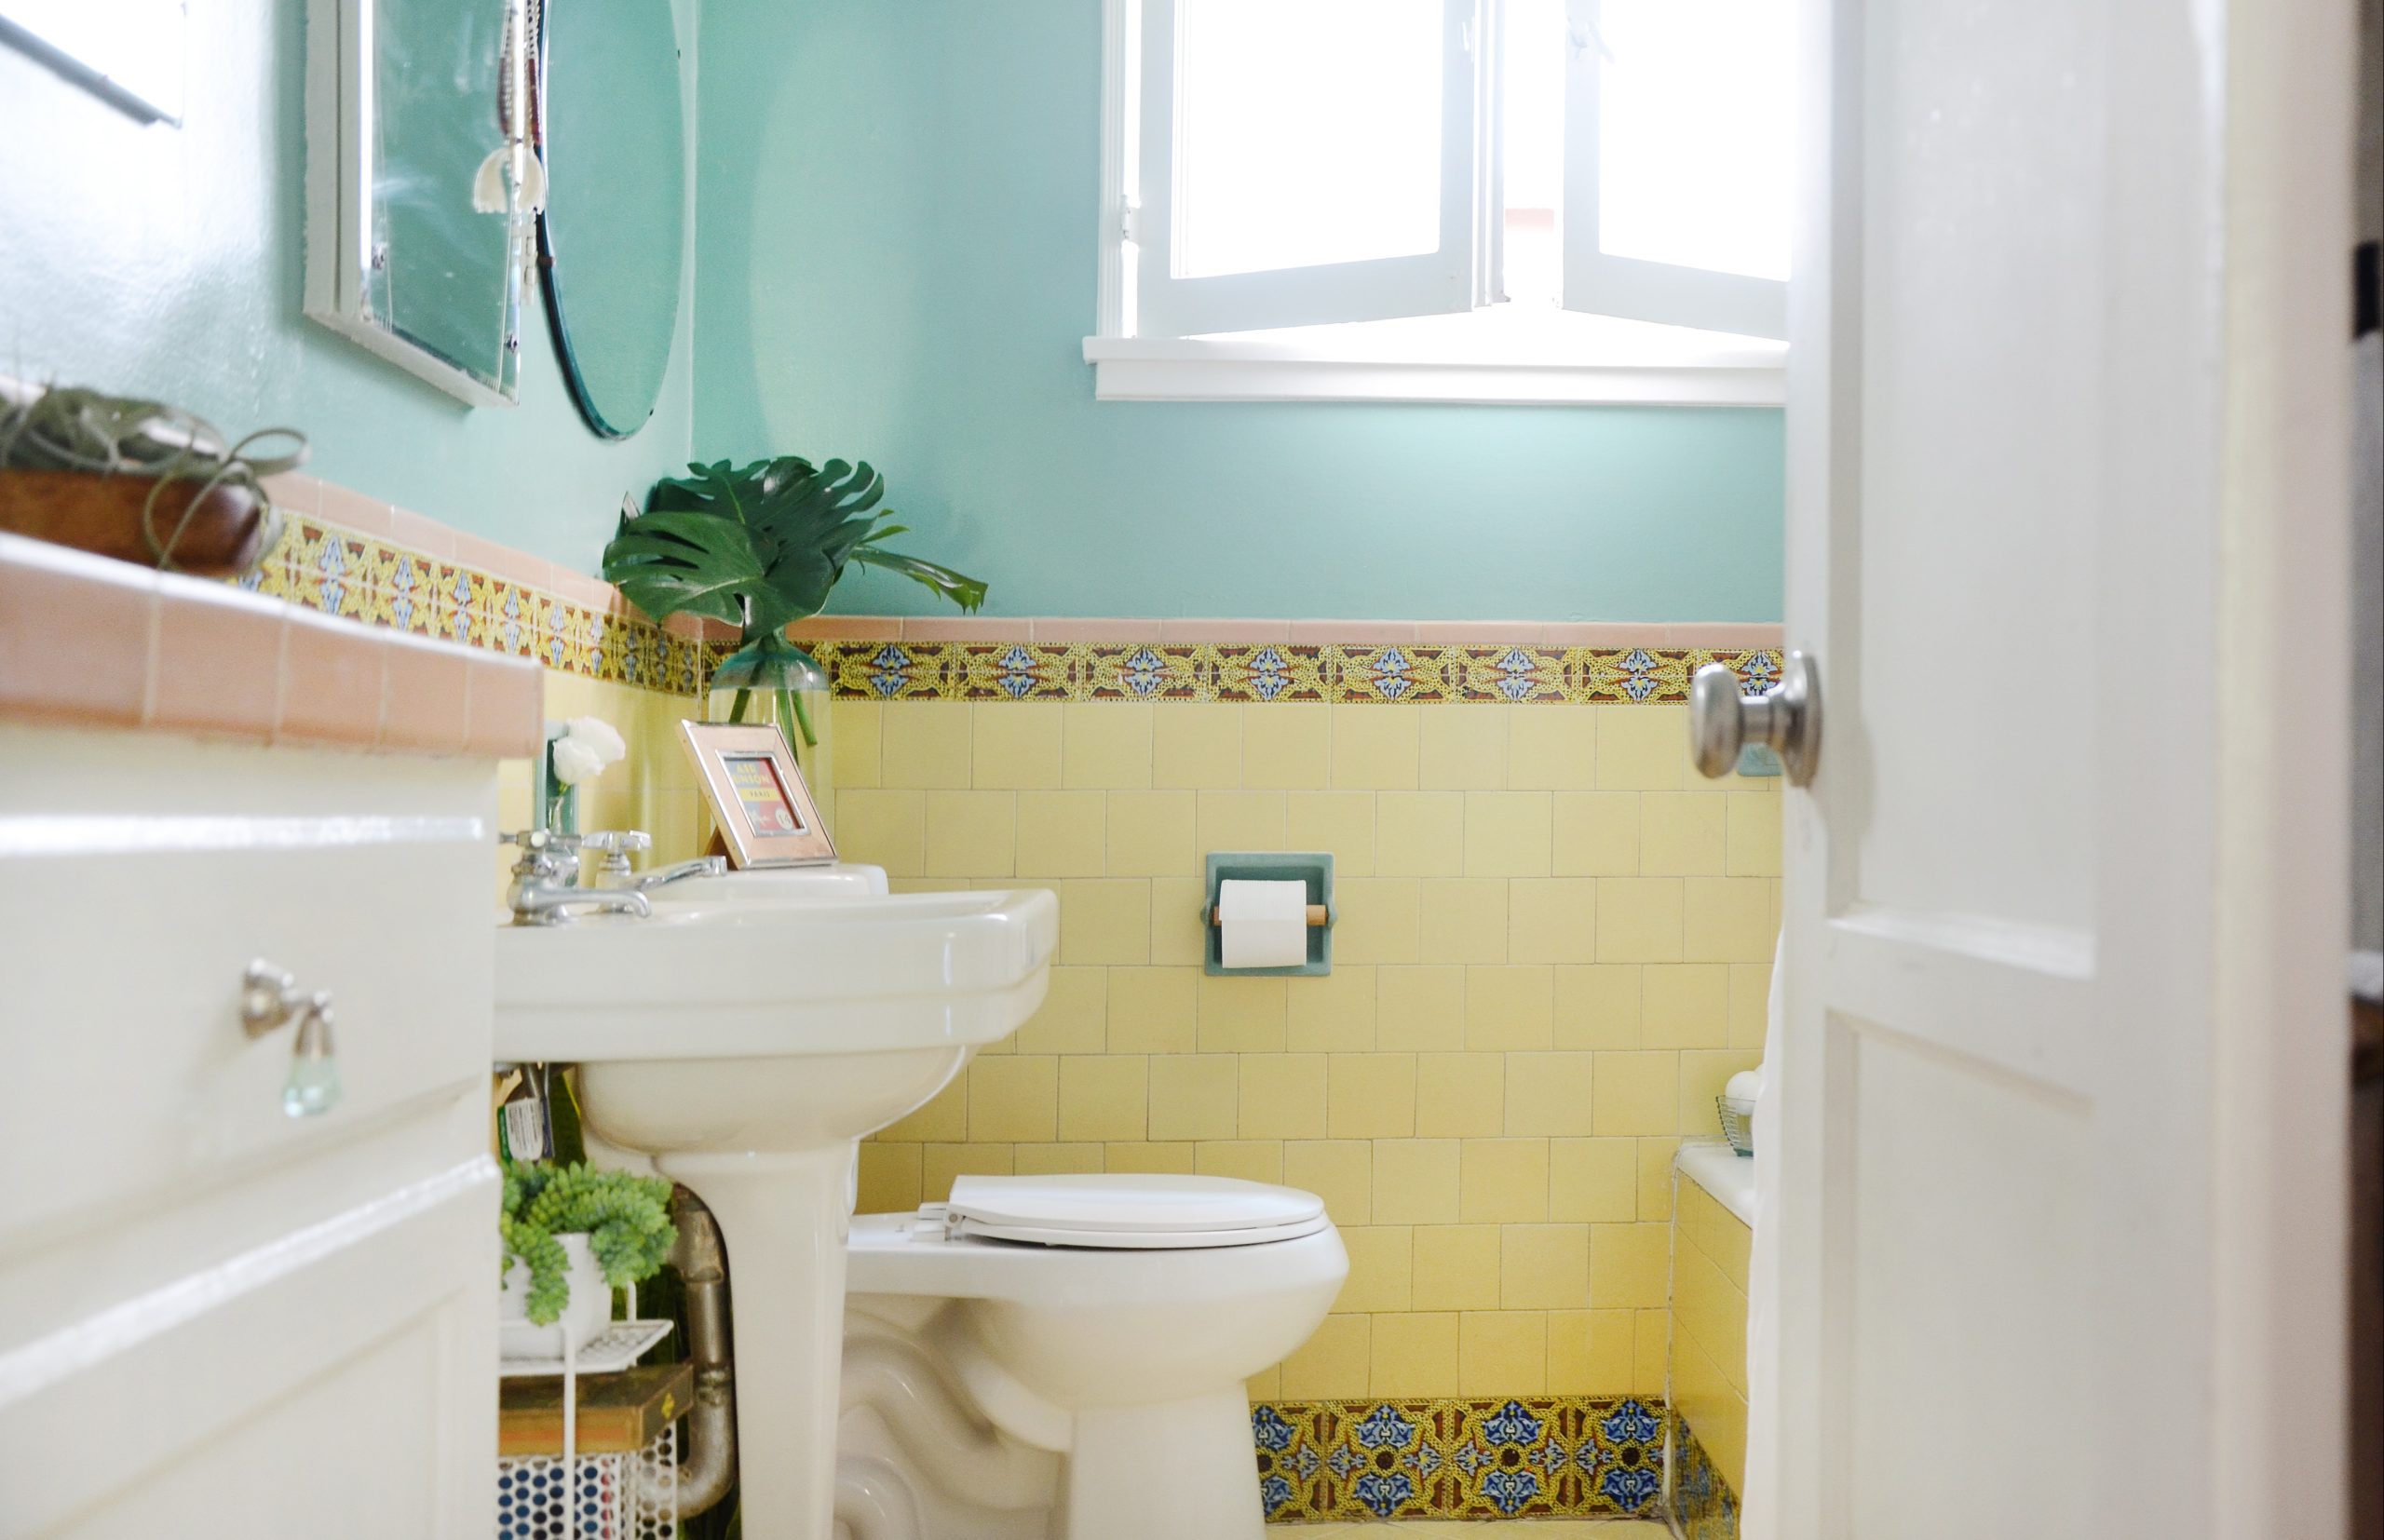 سرویس فرنگی - از بین بردن زردی کاسه توالت